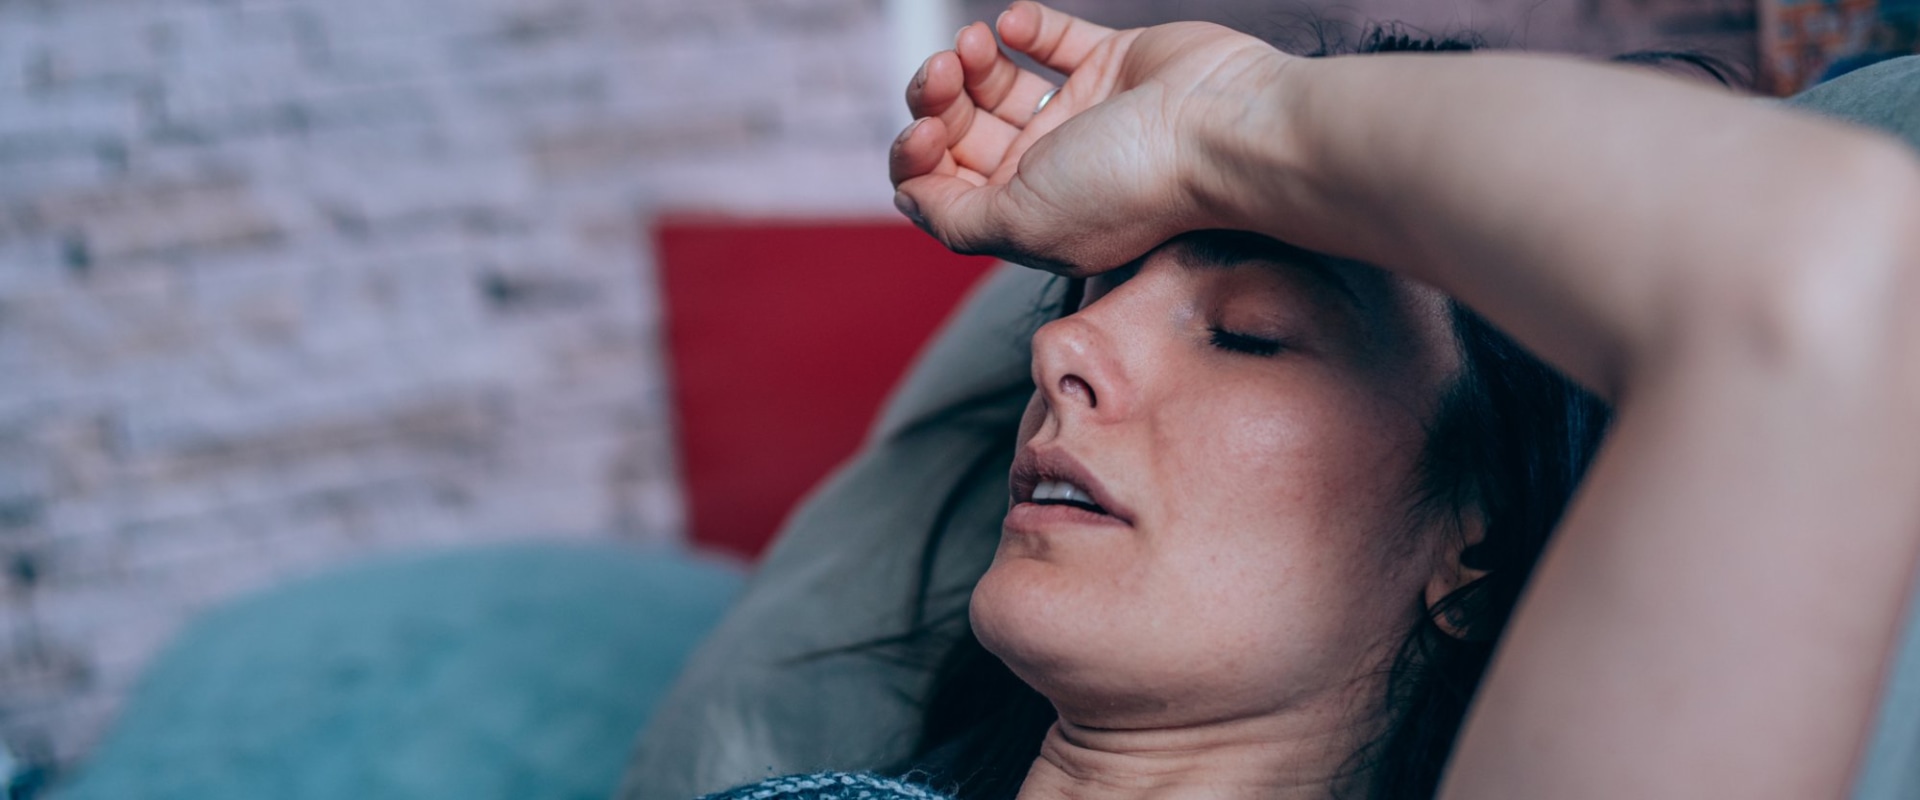 Kan hoofdpijn een symptoom zijn van covid-19?